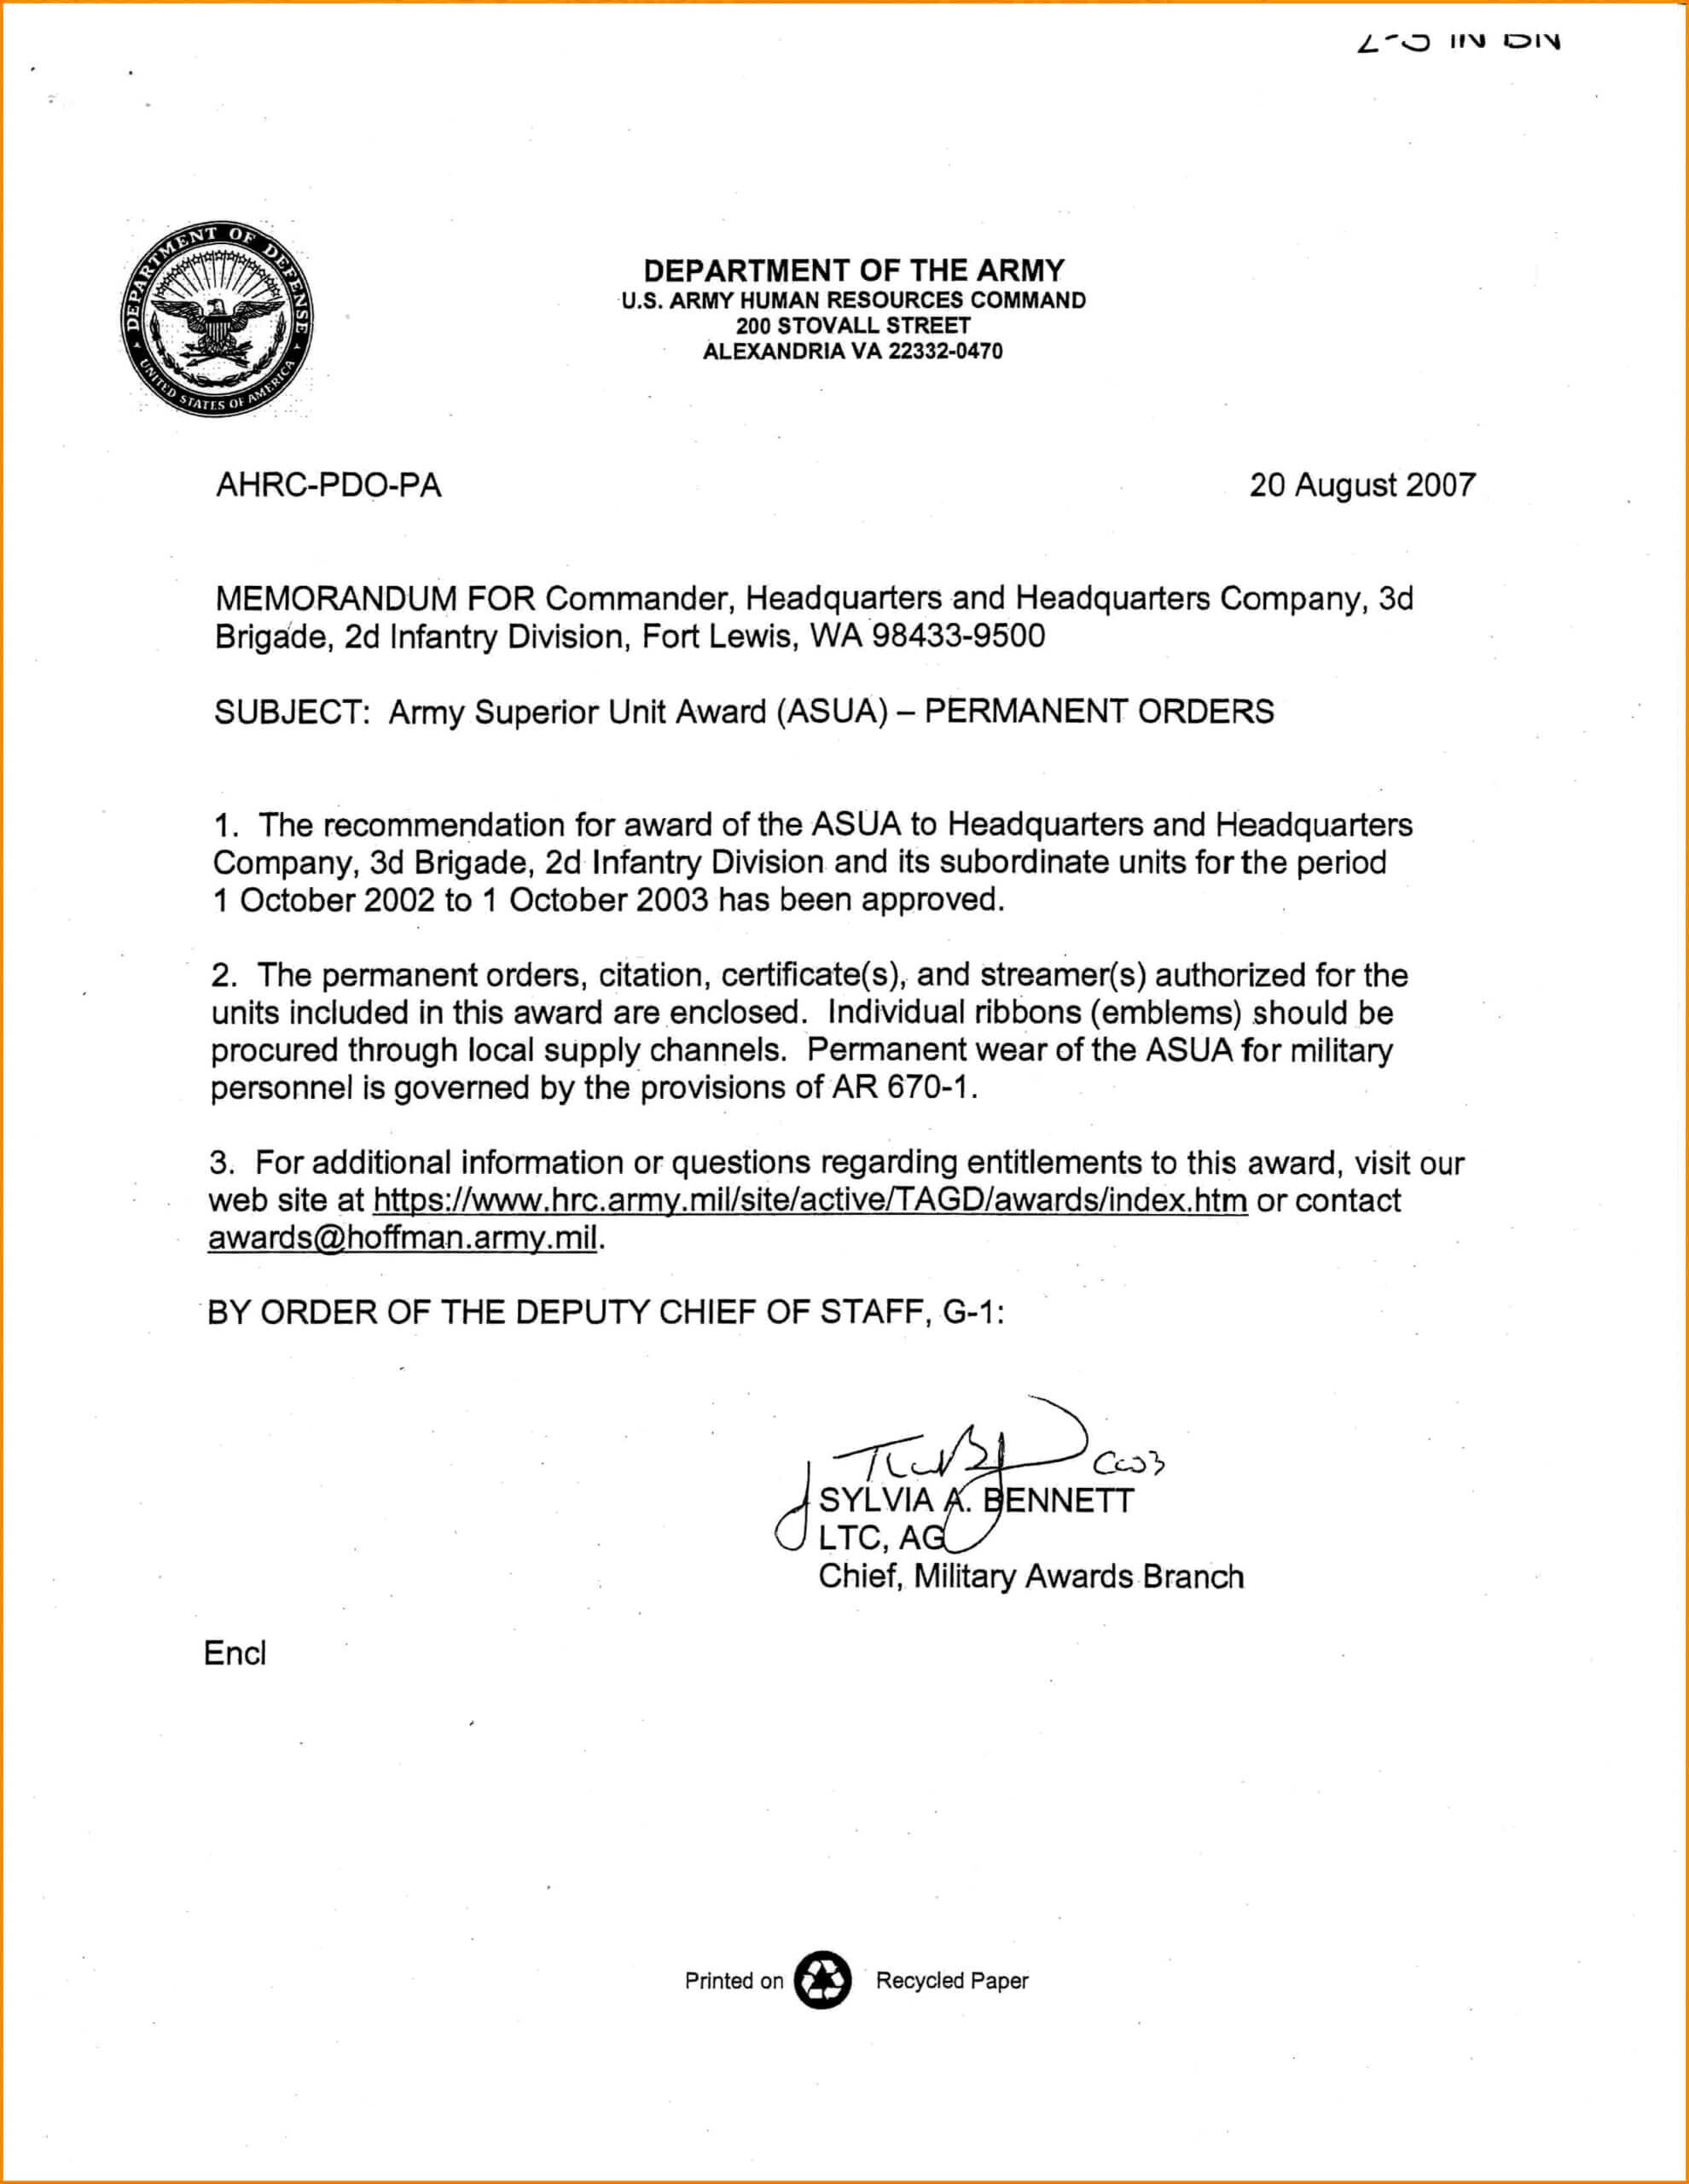 18 Images Of U.s. Army Memorandum Template Word Within Army Memorandum Template Word